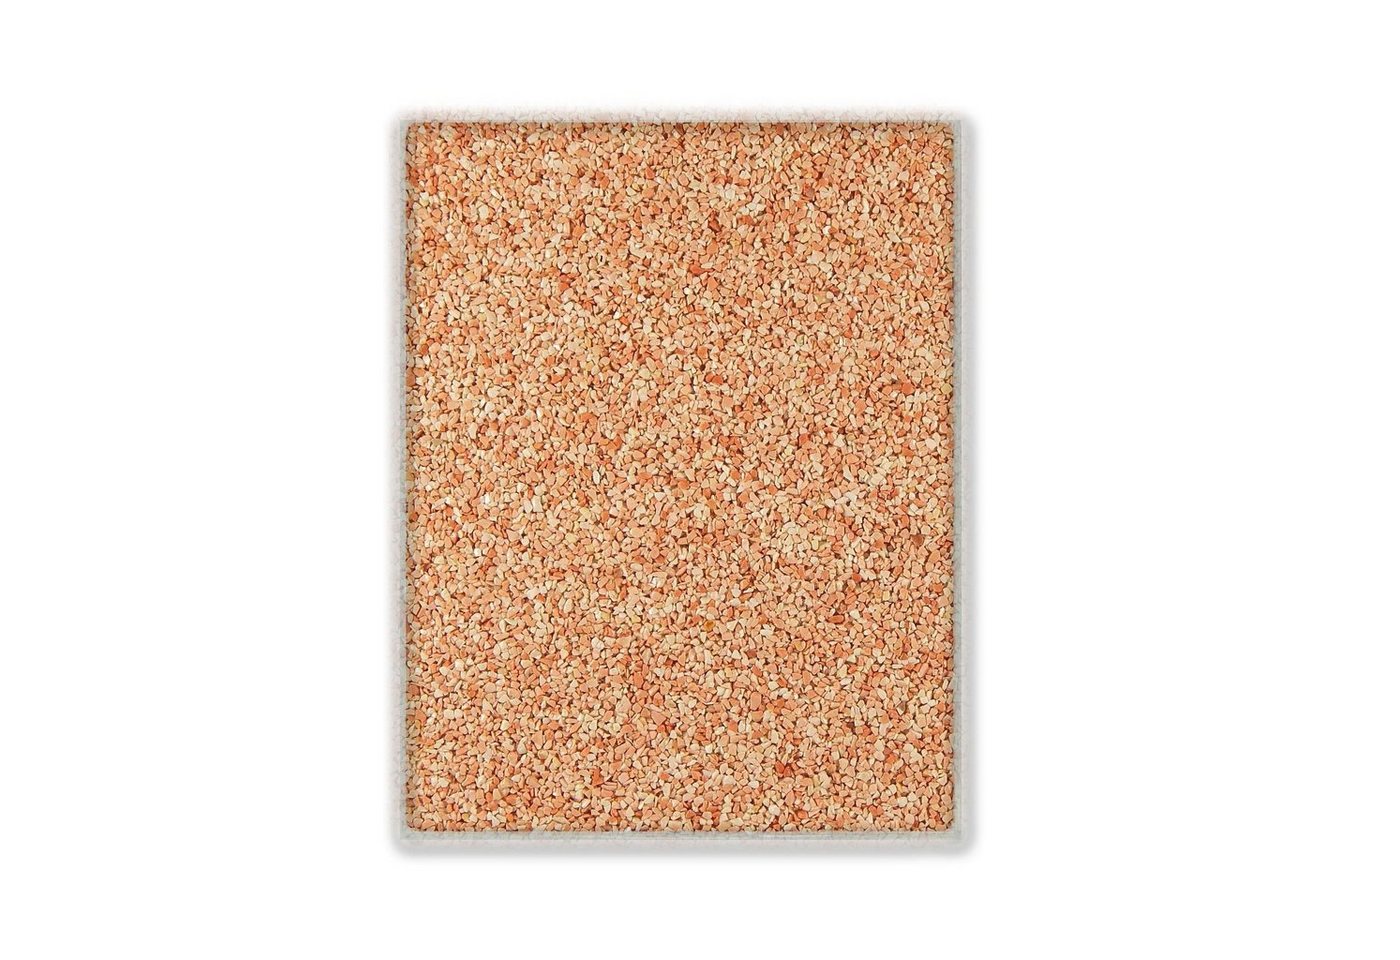 Terralith® Designboden Farbmuster Kompaktboden -rosa-, Originalware aus der Charge, die wir in diesem Moment im Abverkauf haben. von Terralith®